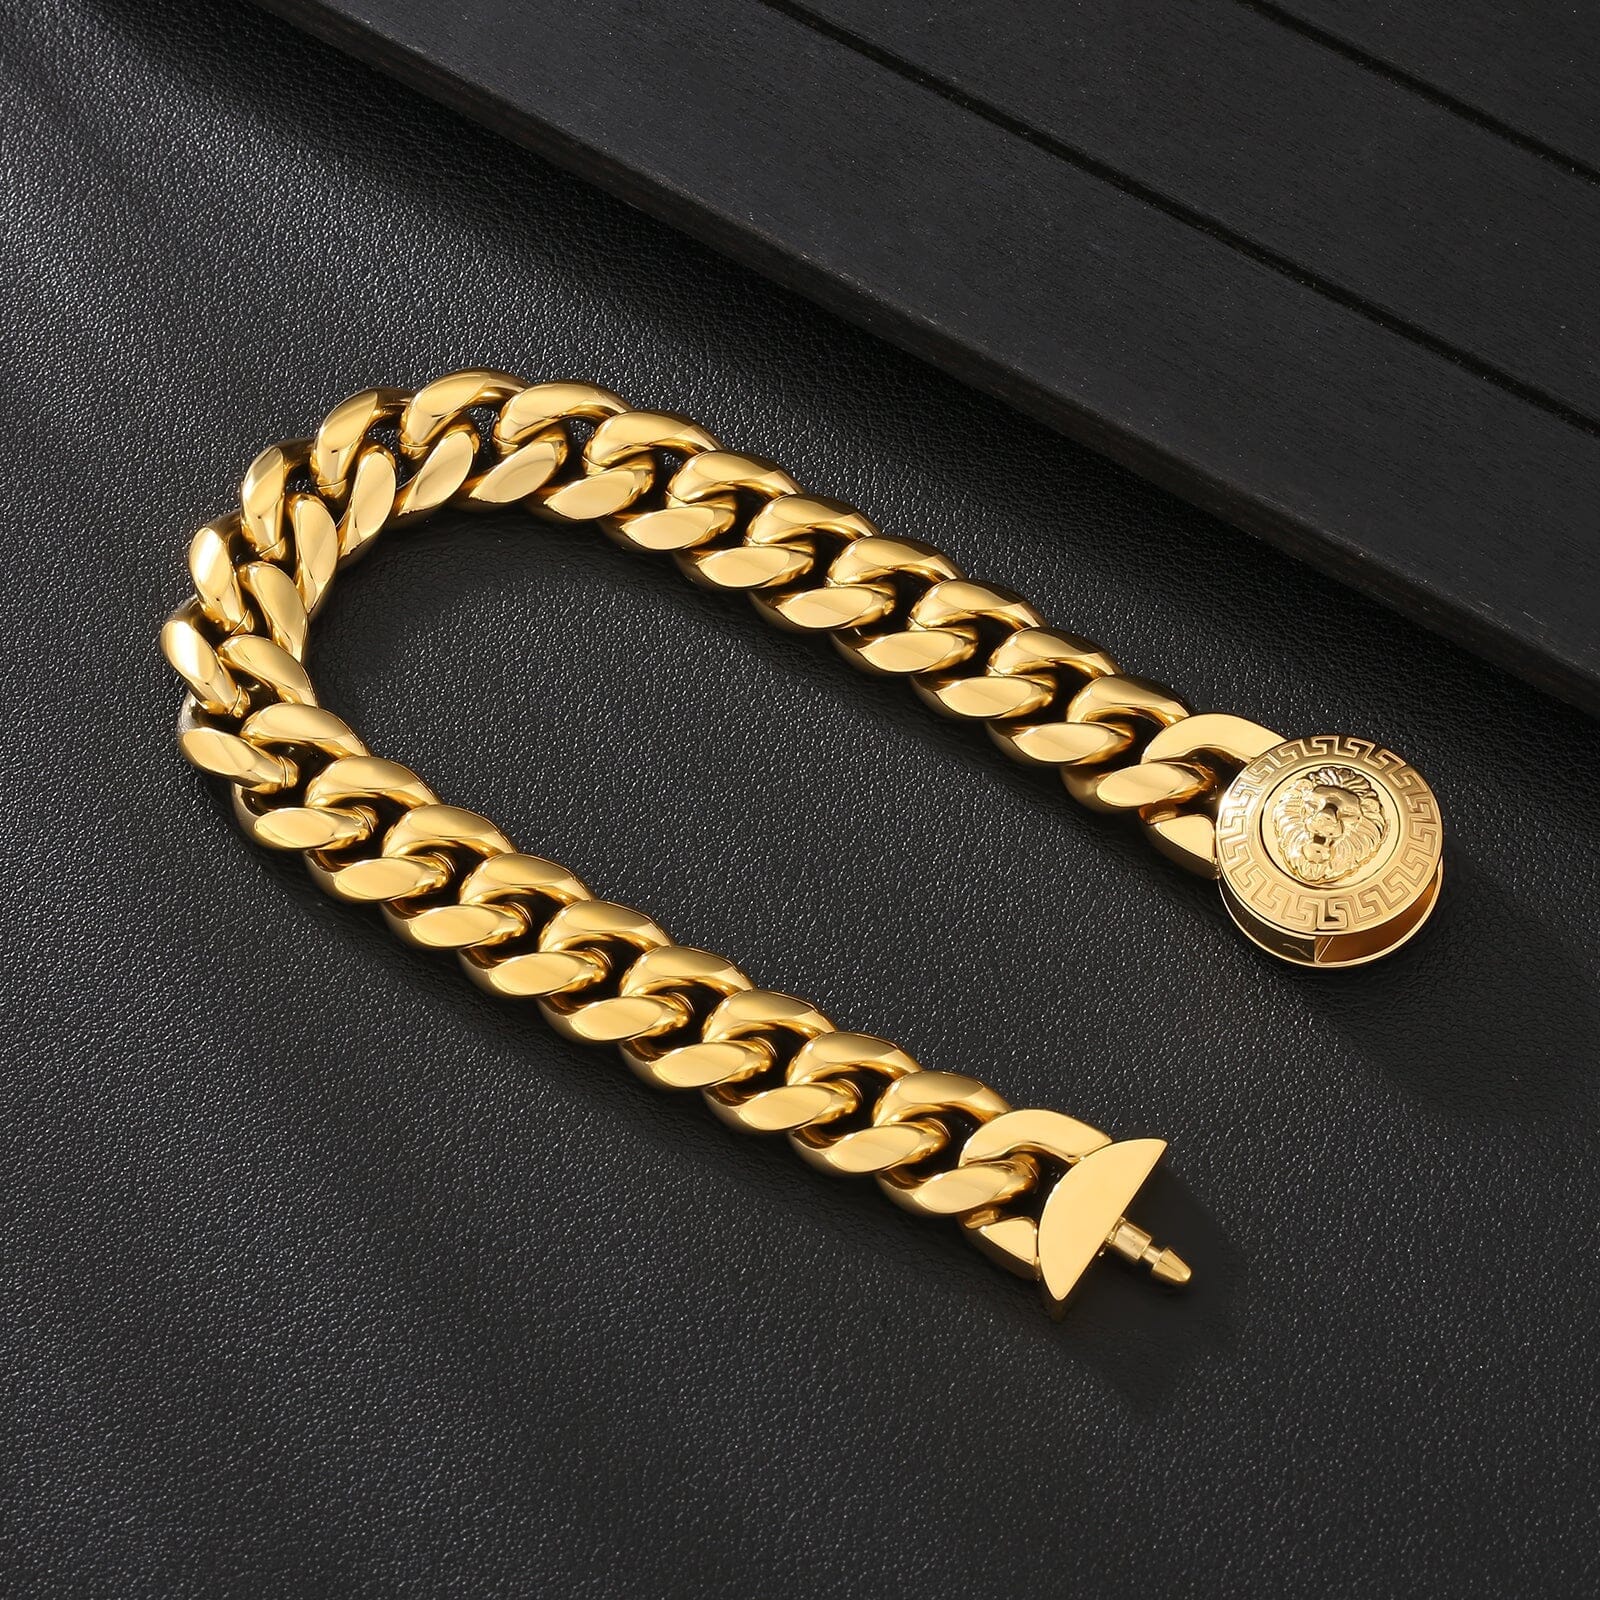 The King - 12mm Cuban Link Bracelet in 18K Gold Plated Bracelets 